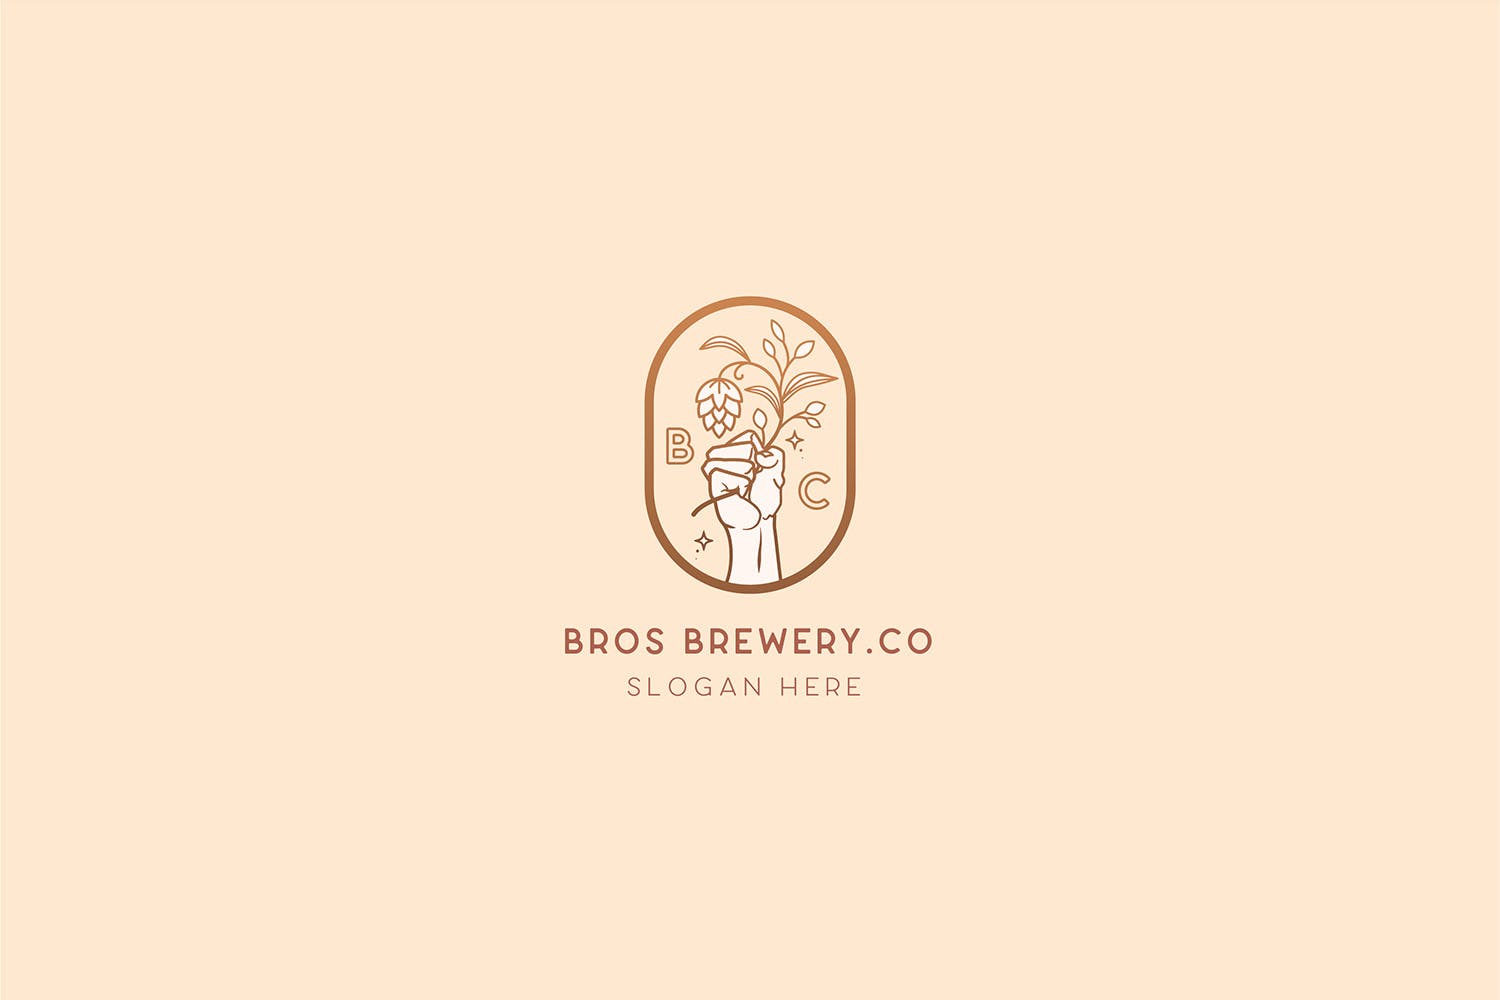 咖啡/啤酒品牌Logo设计非凡图库精选模板 Brewery Brotherhood cafe beer Logo Template插图(2)